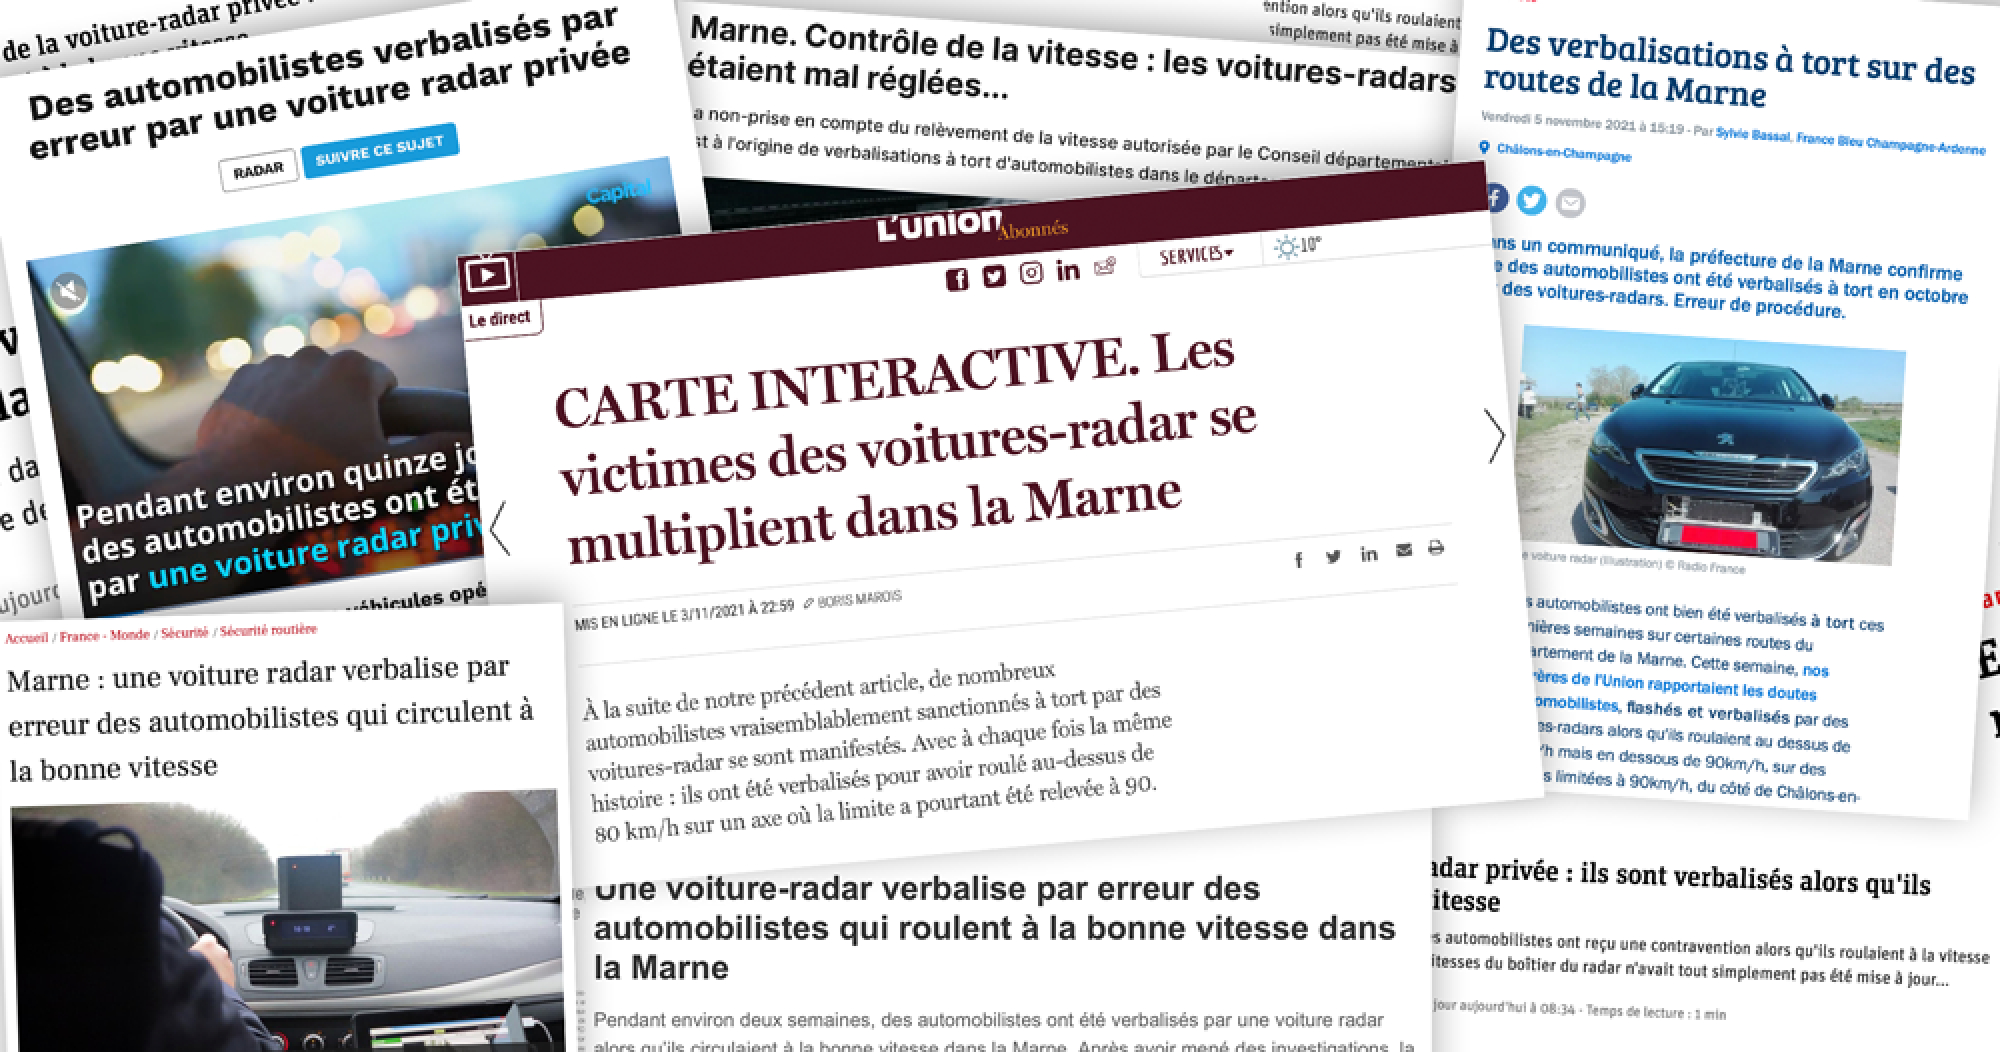 Voitures-radars privées : des centaines d’automobilistes verbalisés à tort dans la Marne